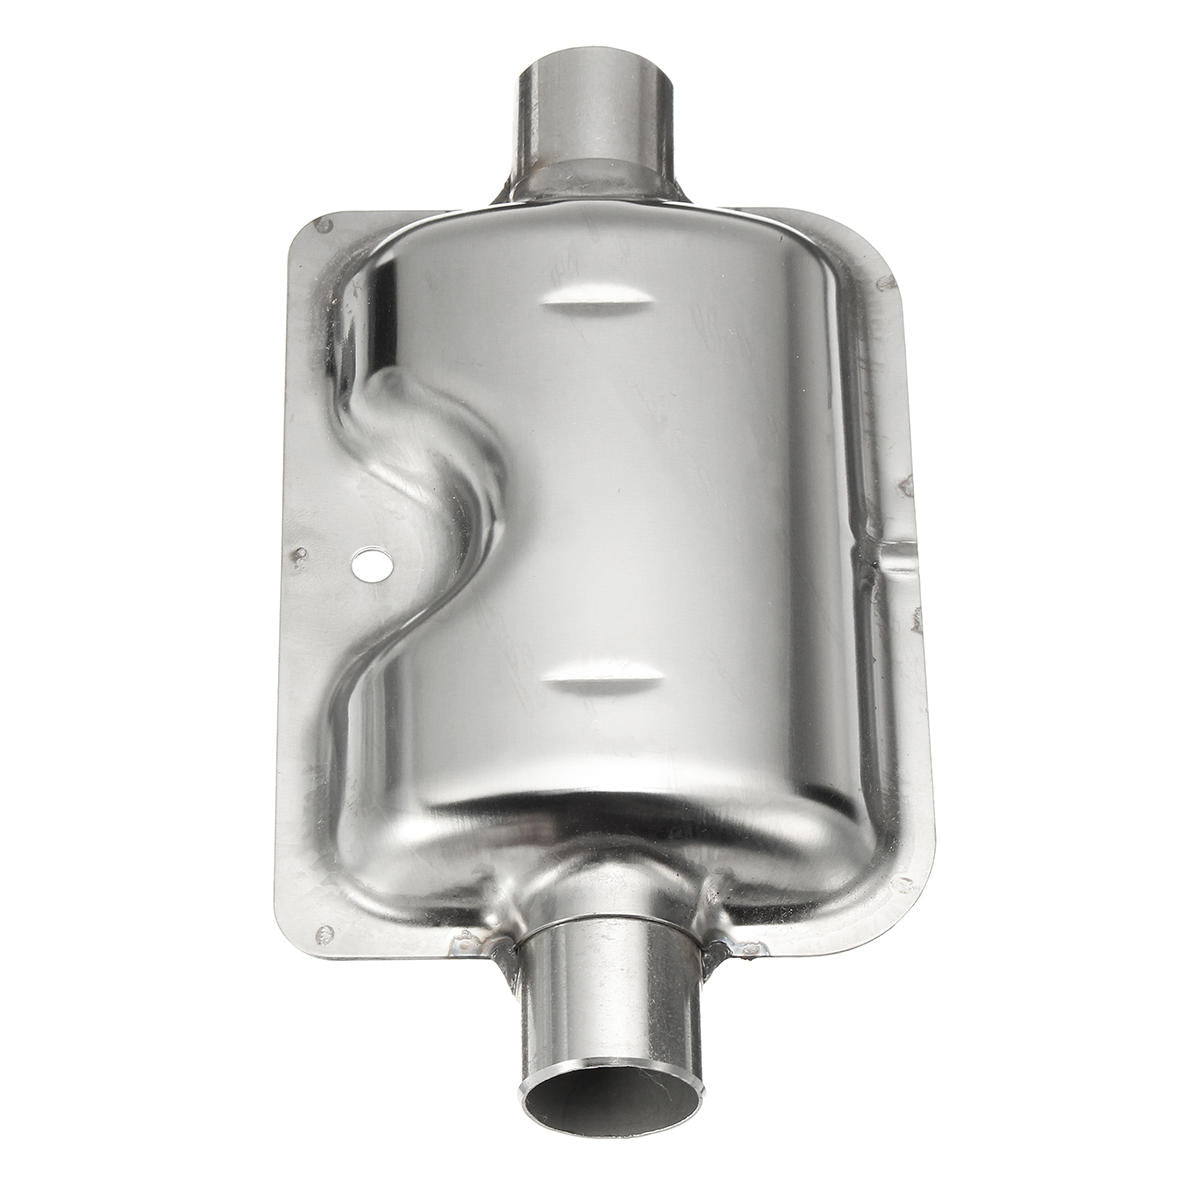 24 mm Auspuff + 25 mm Filter + Auspuff- und Ansaugrohr für  Diesel-Lufterhitzer LAVENTE